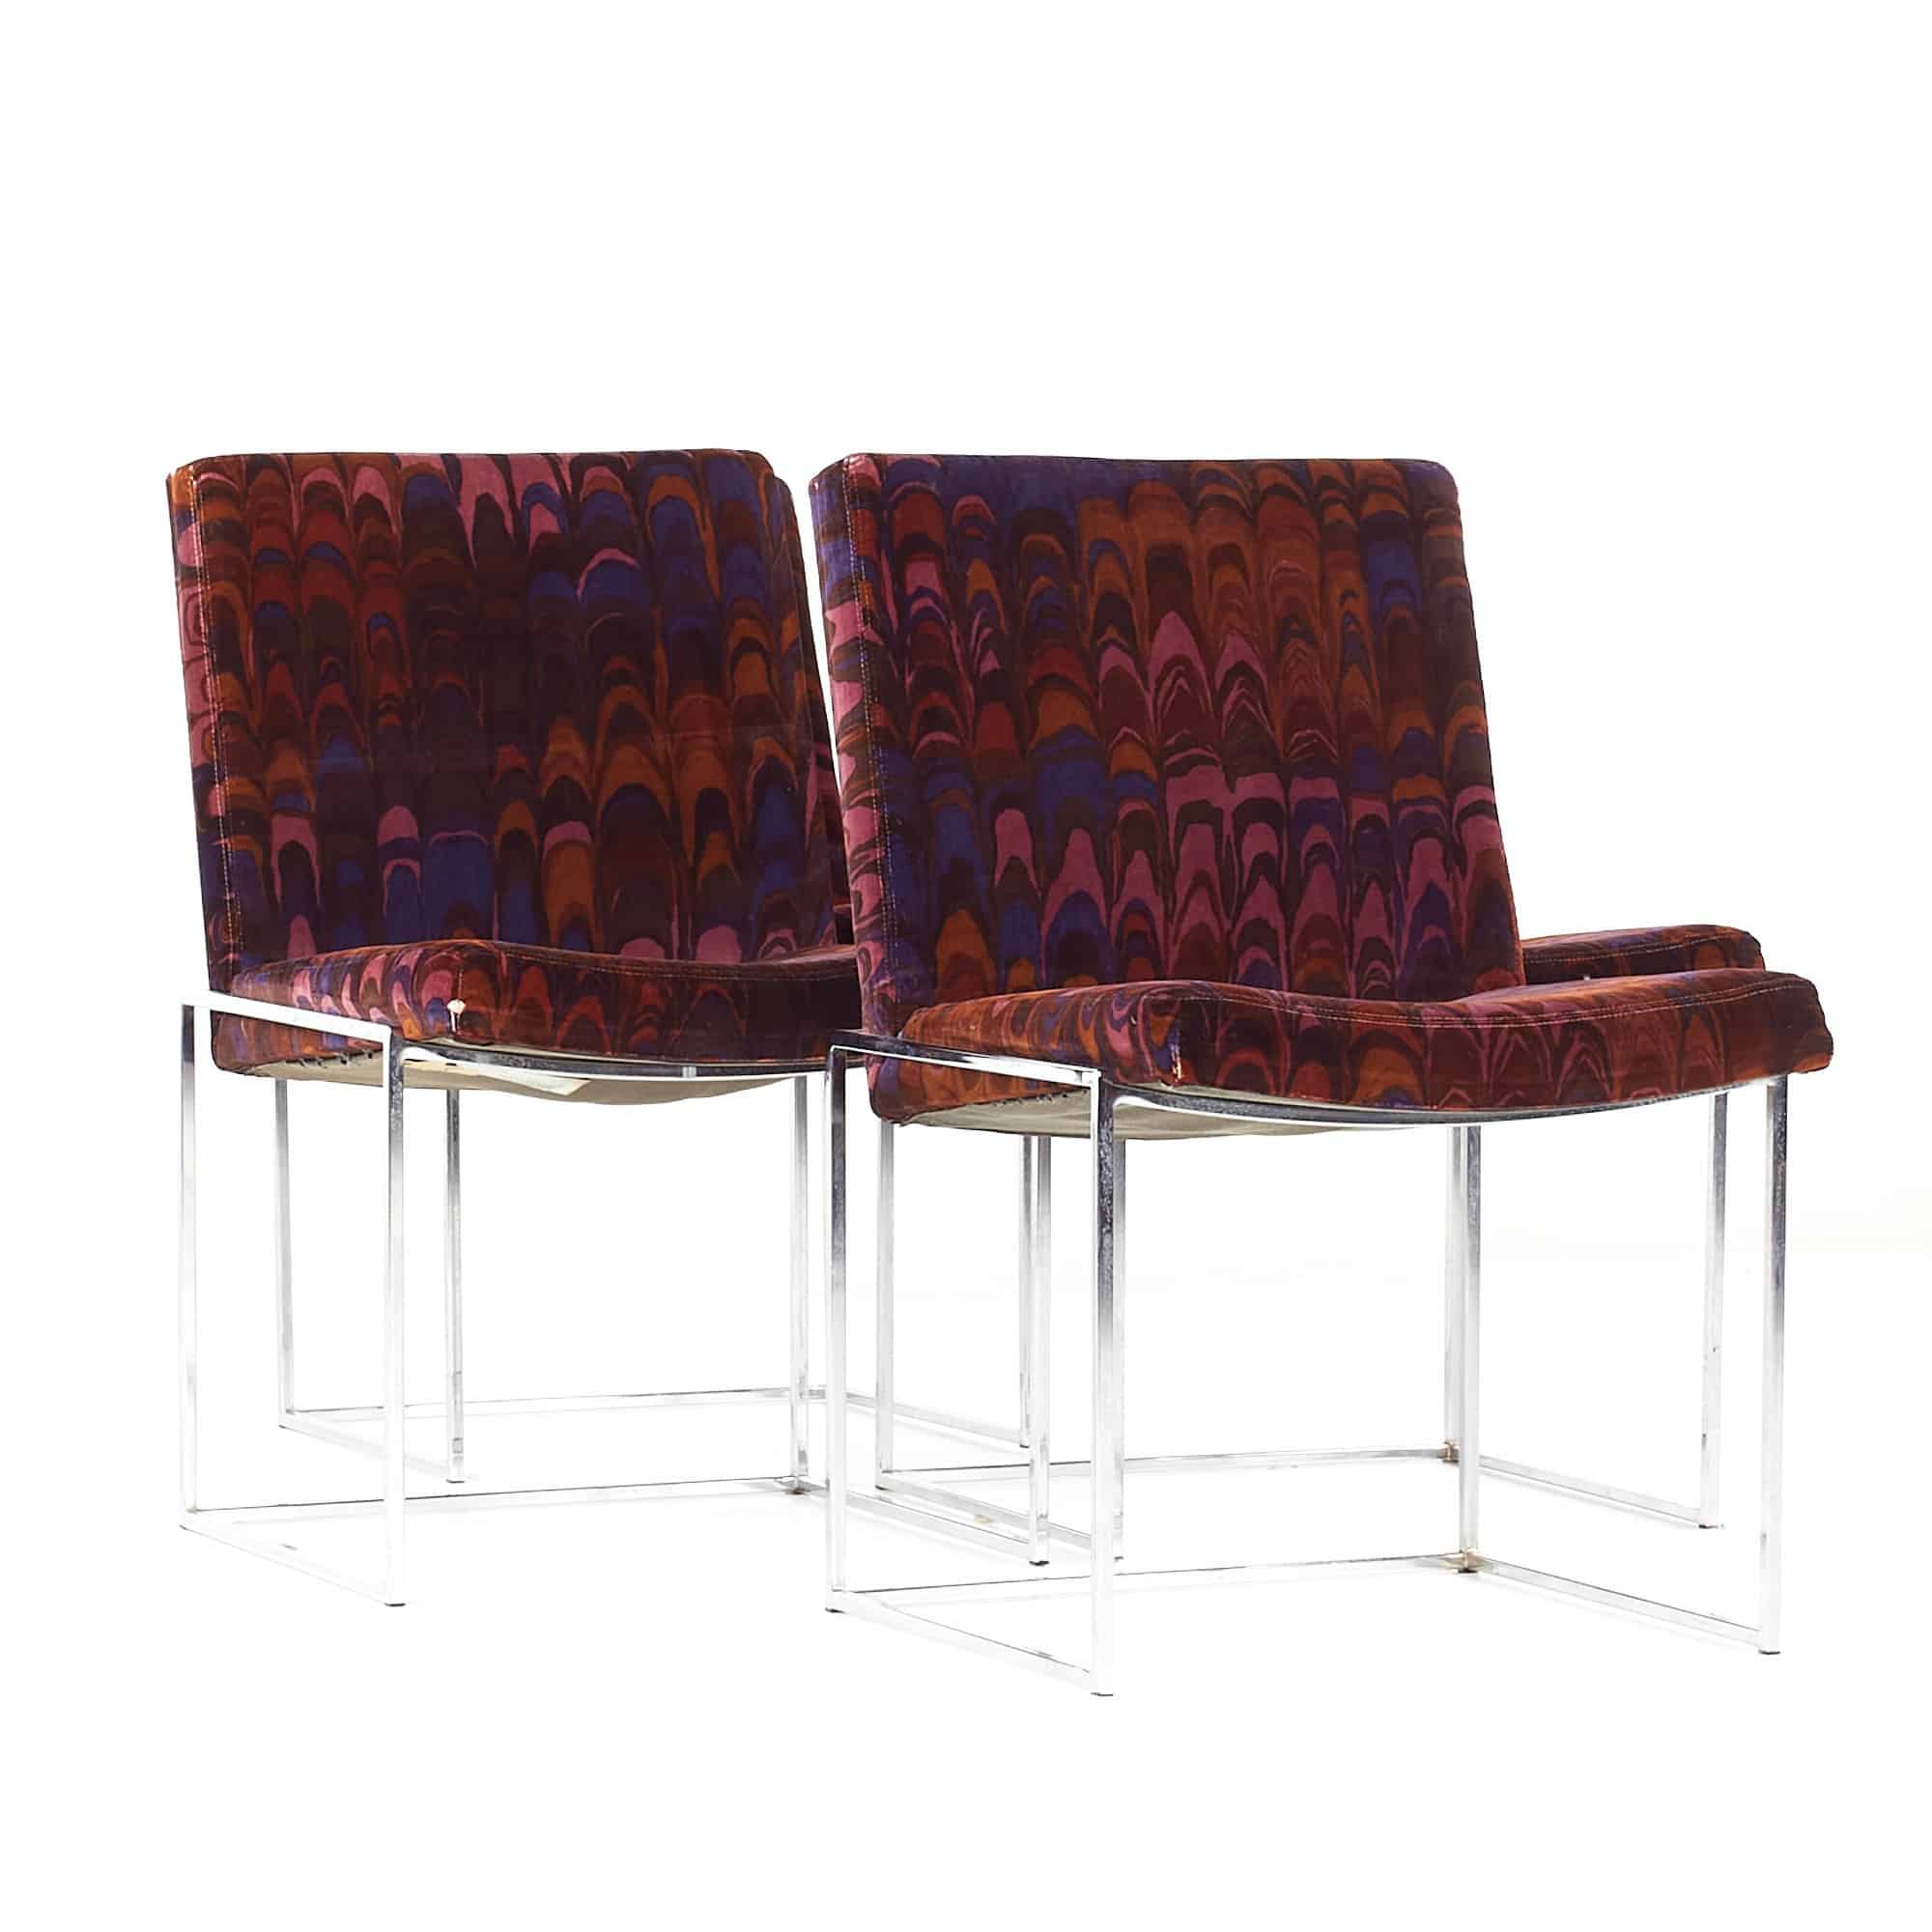 Jack Lenor Larsen Mid Century Square Chrome Framed Dining Chairs - Set of 4